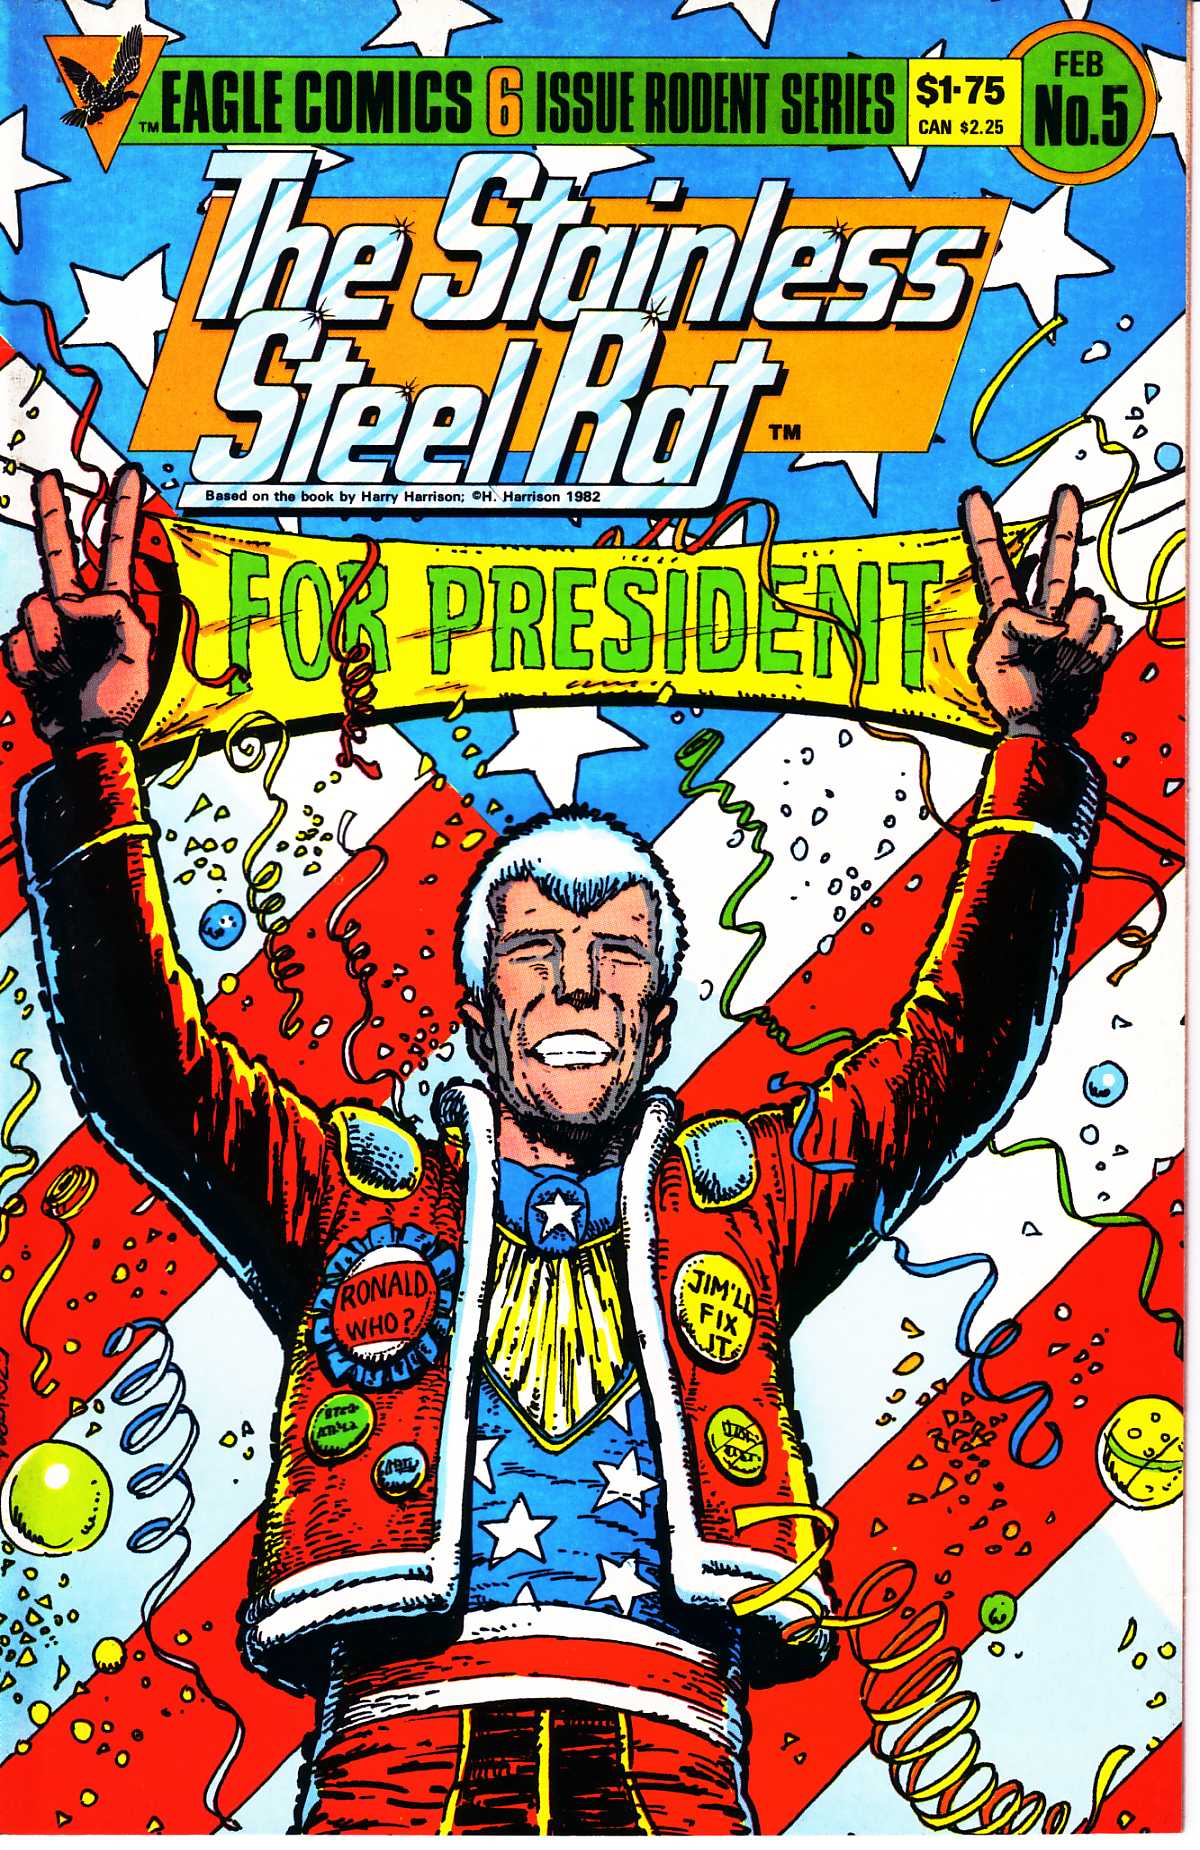 «Стальную Крысу — в Президенты!» (The Stainless Steel Rat for President) (1982)